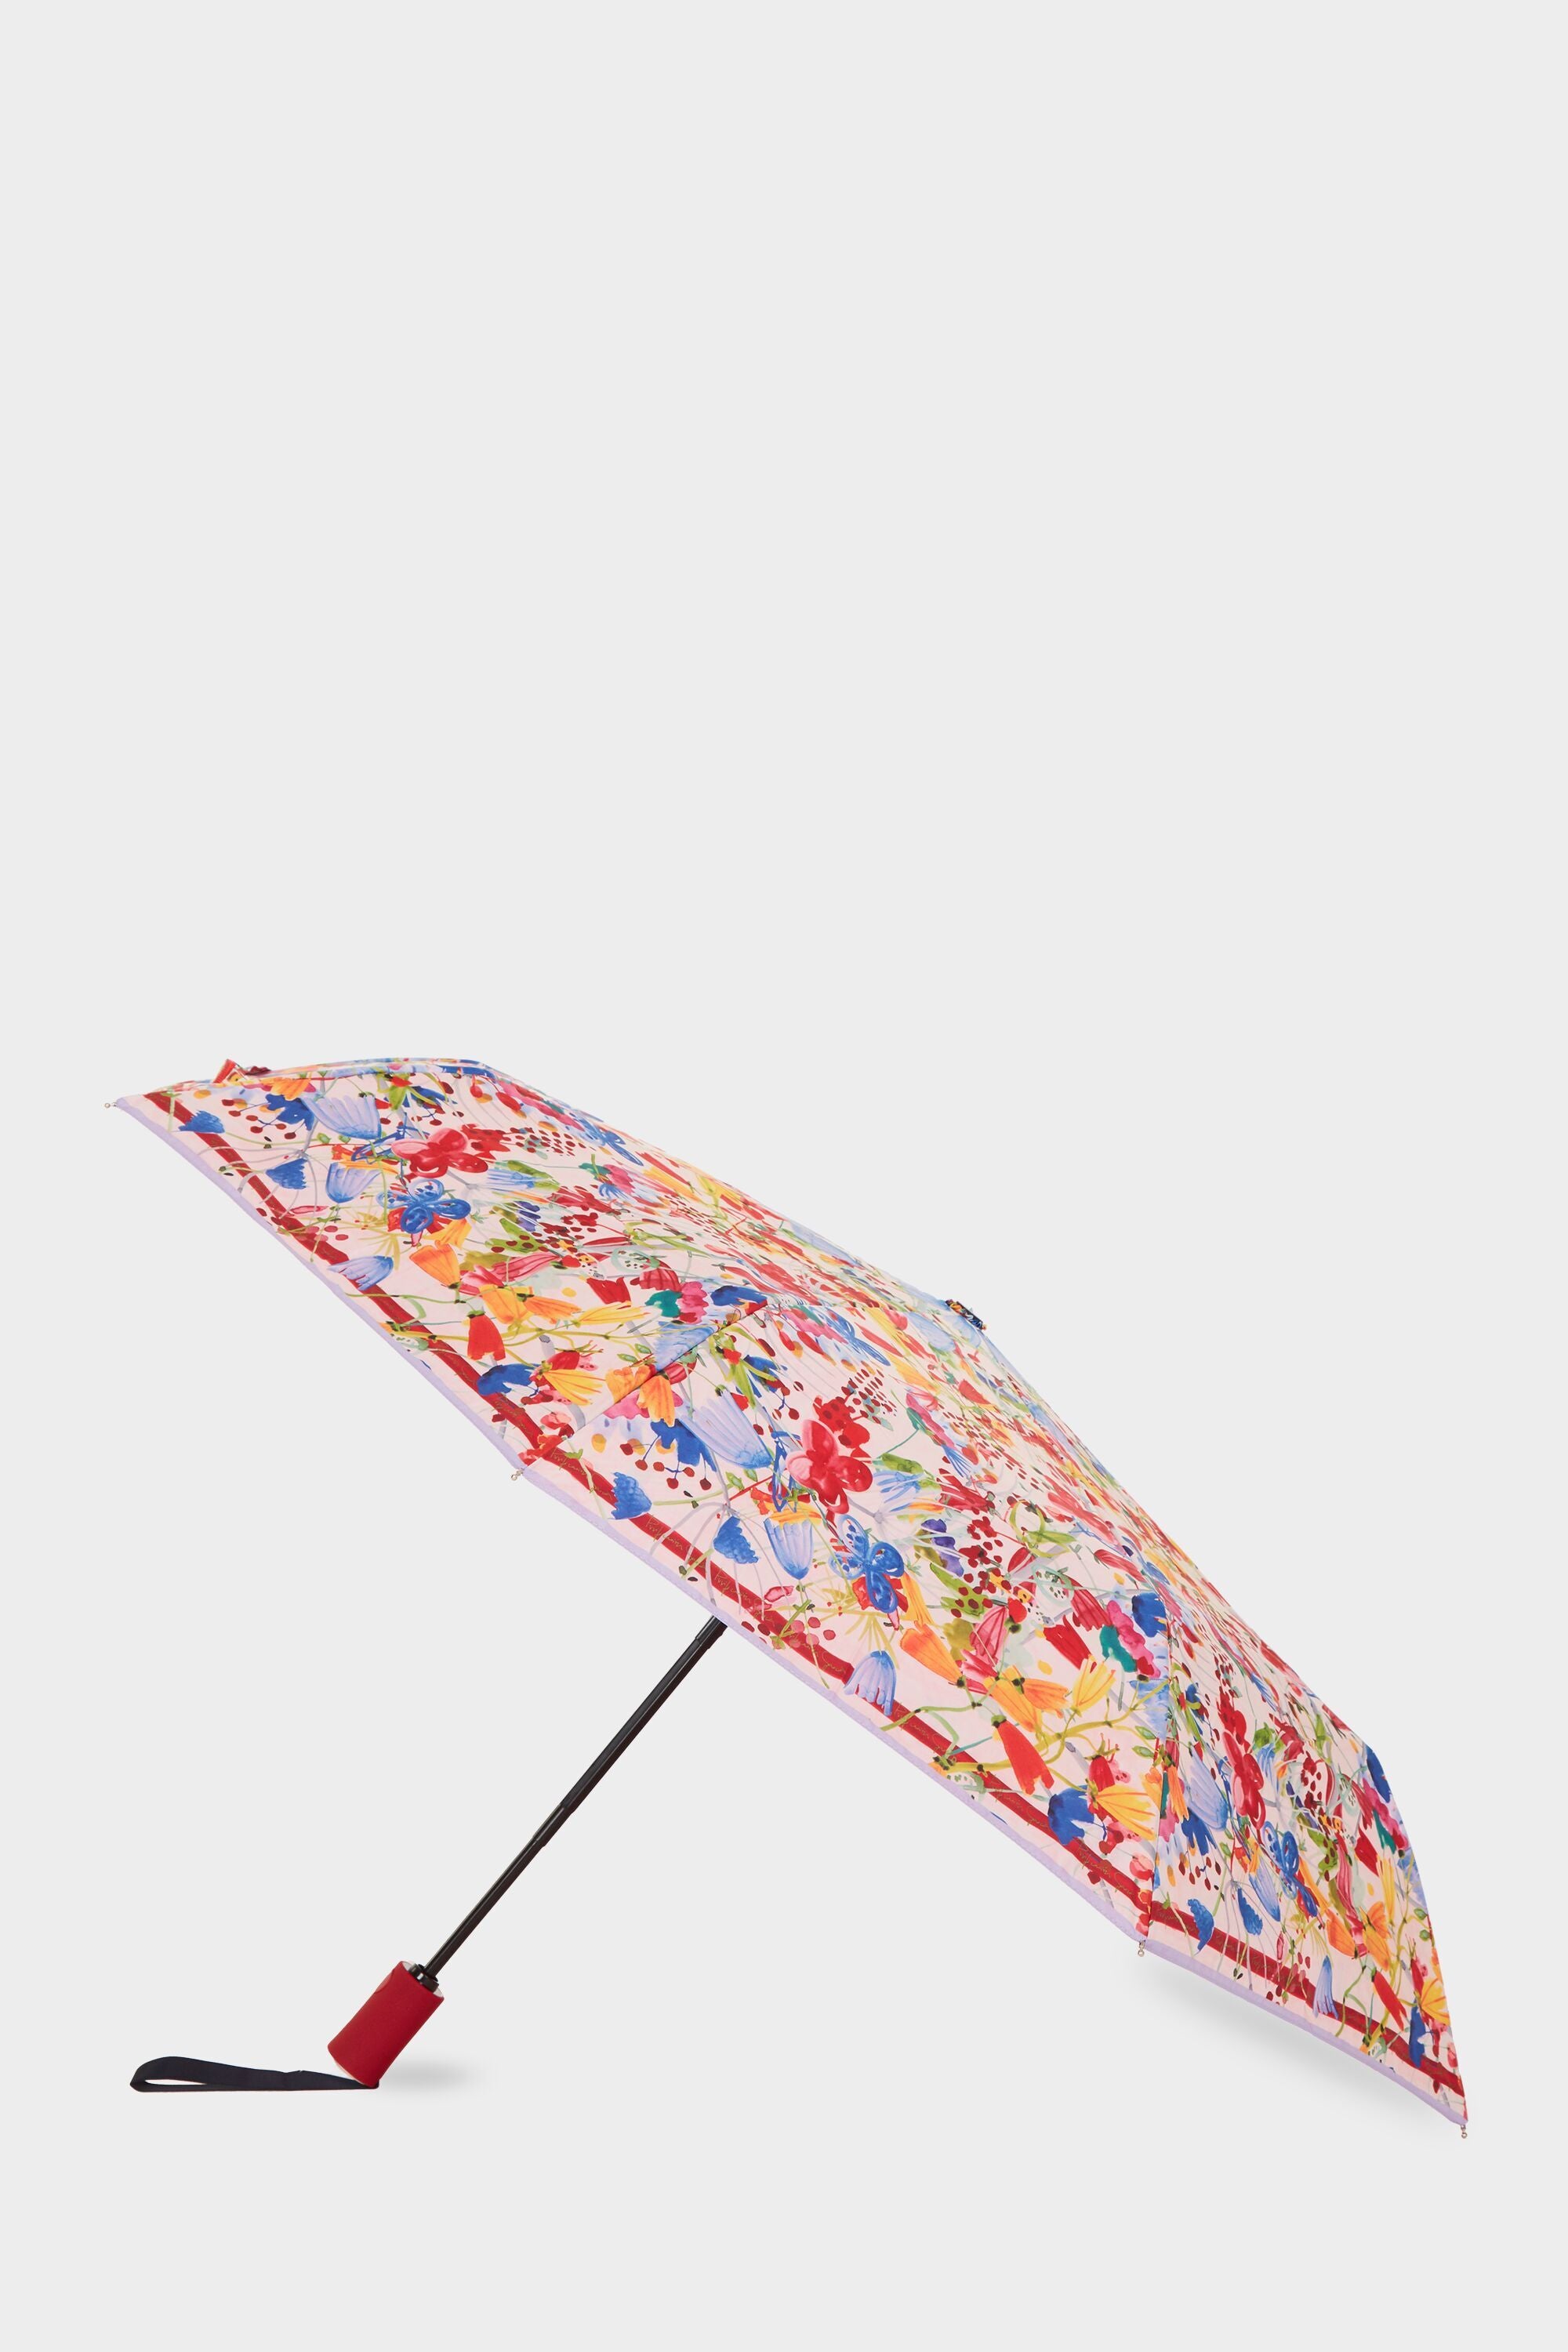 solamente Días laborables Marca comercial Paraguas plegable Enredadas multicolor - Purificacion Garcia España